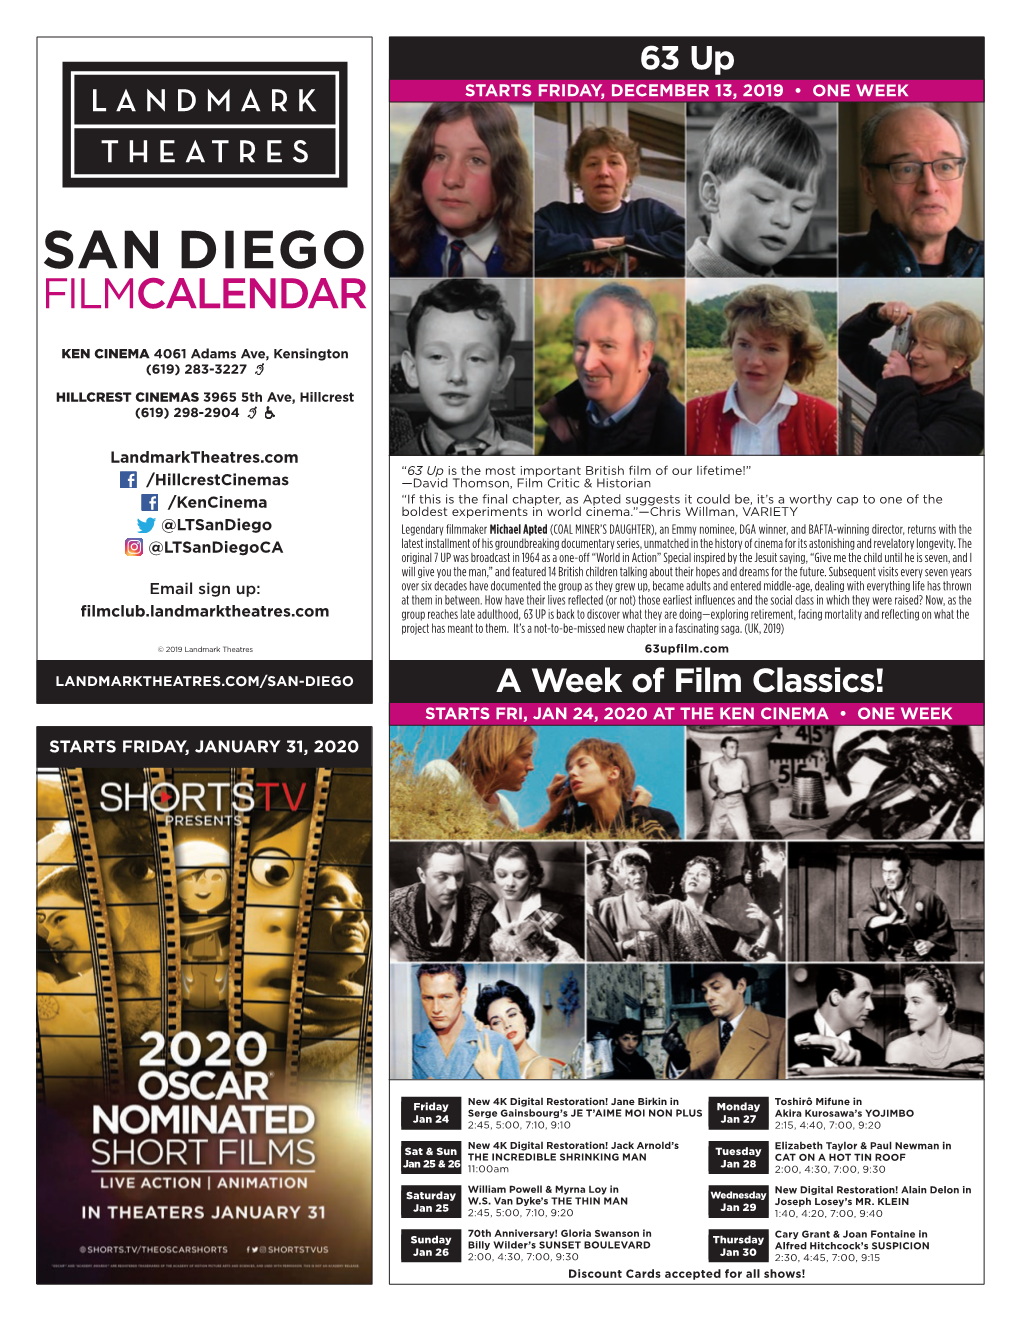 San Diego Filmcalendar